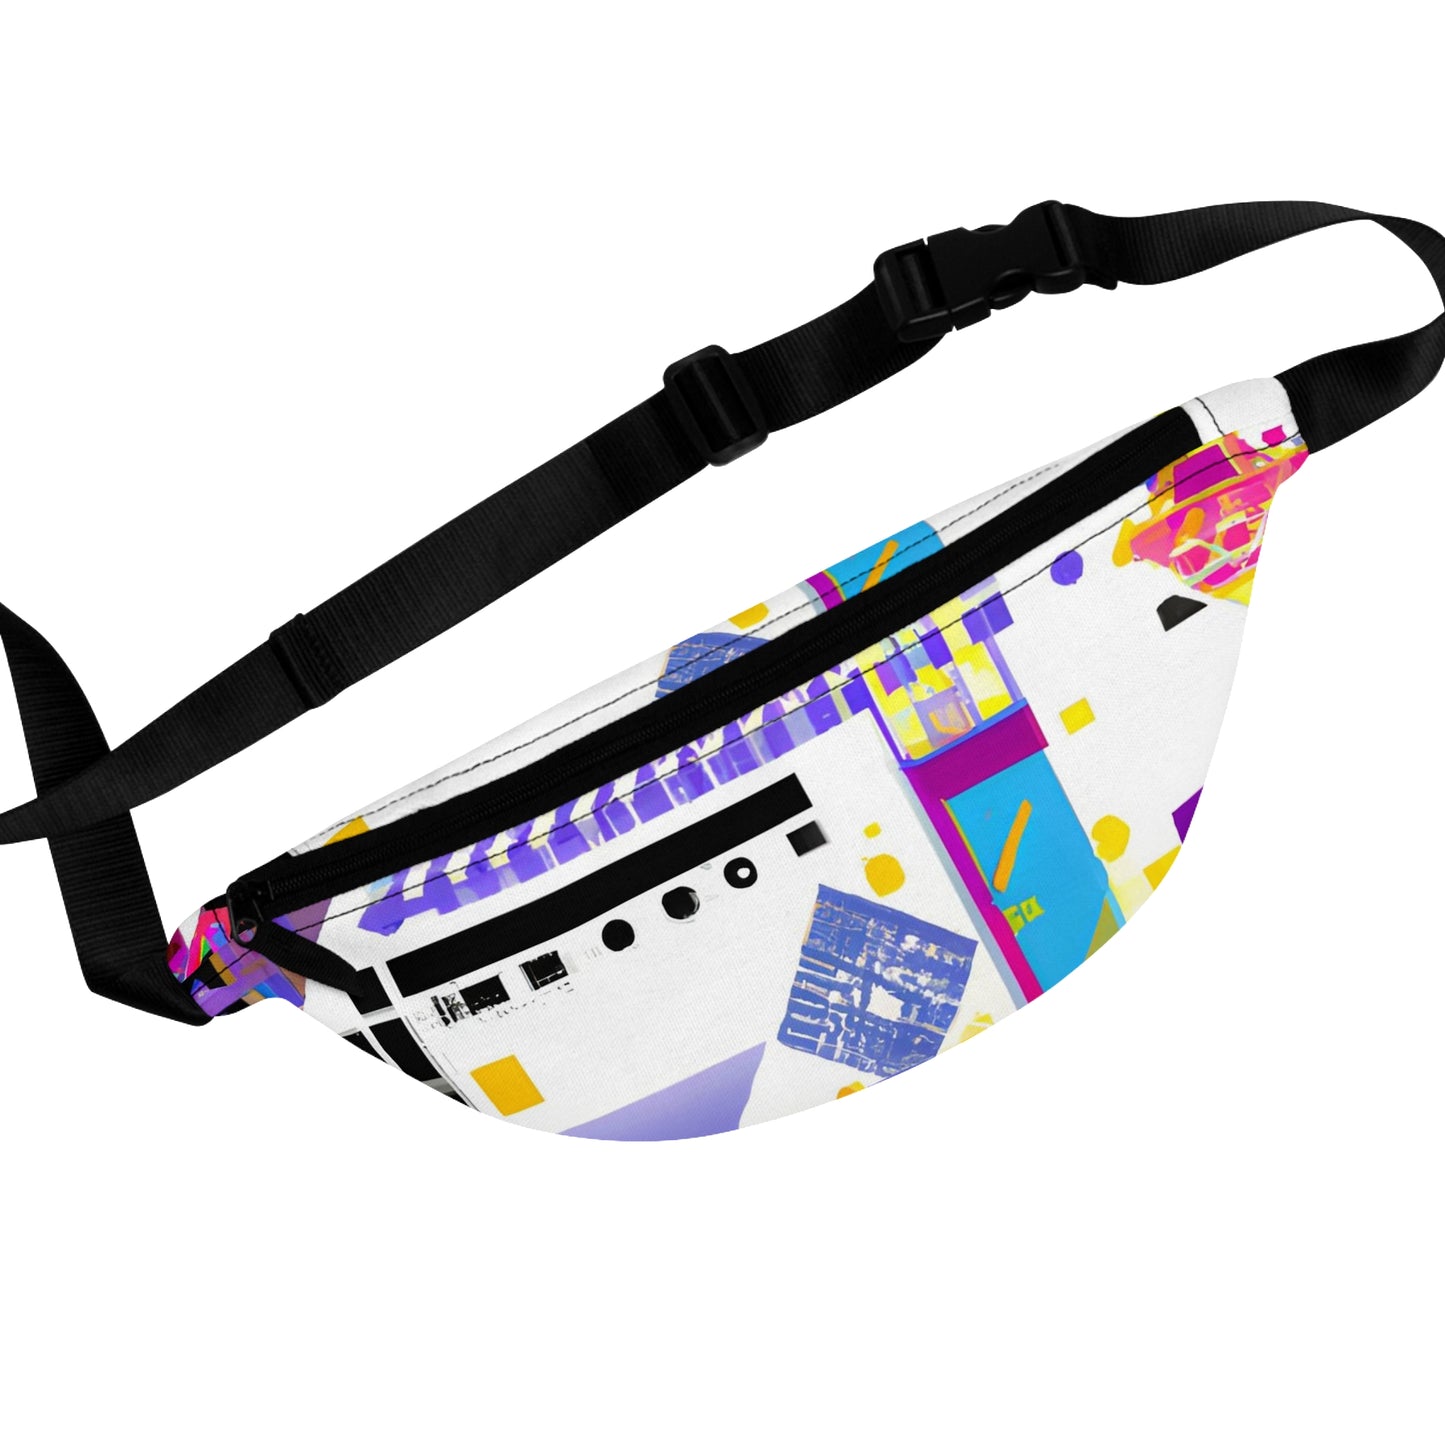 SparkyElectronica - LGBTQ+ Fanny Pack Belt Bag